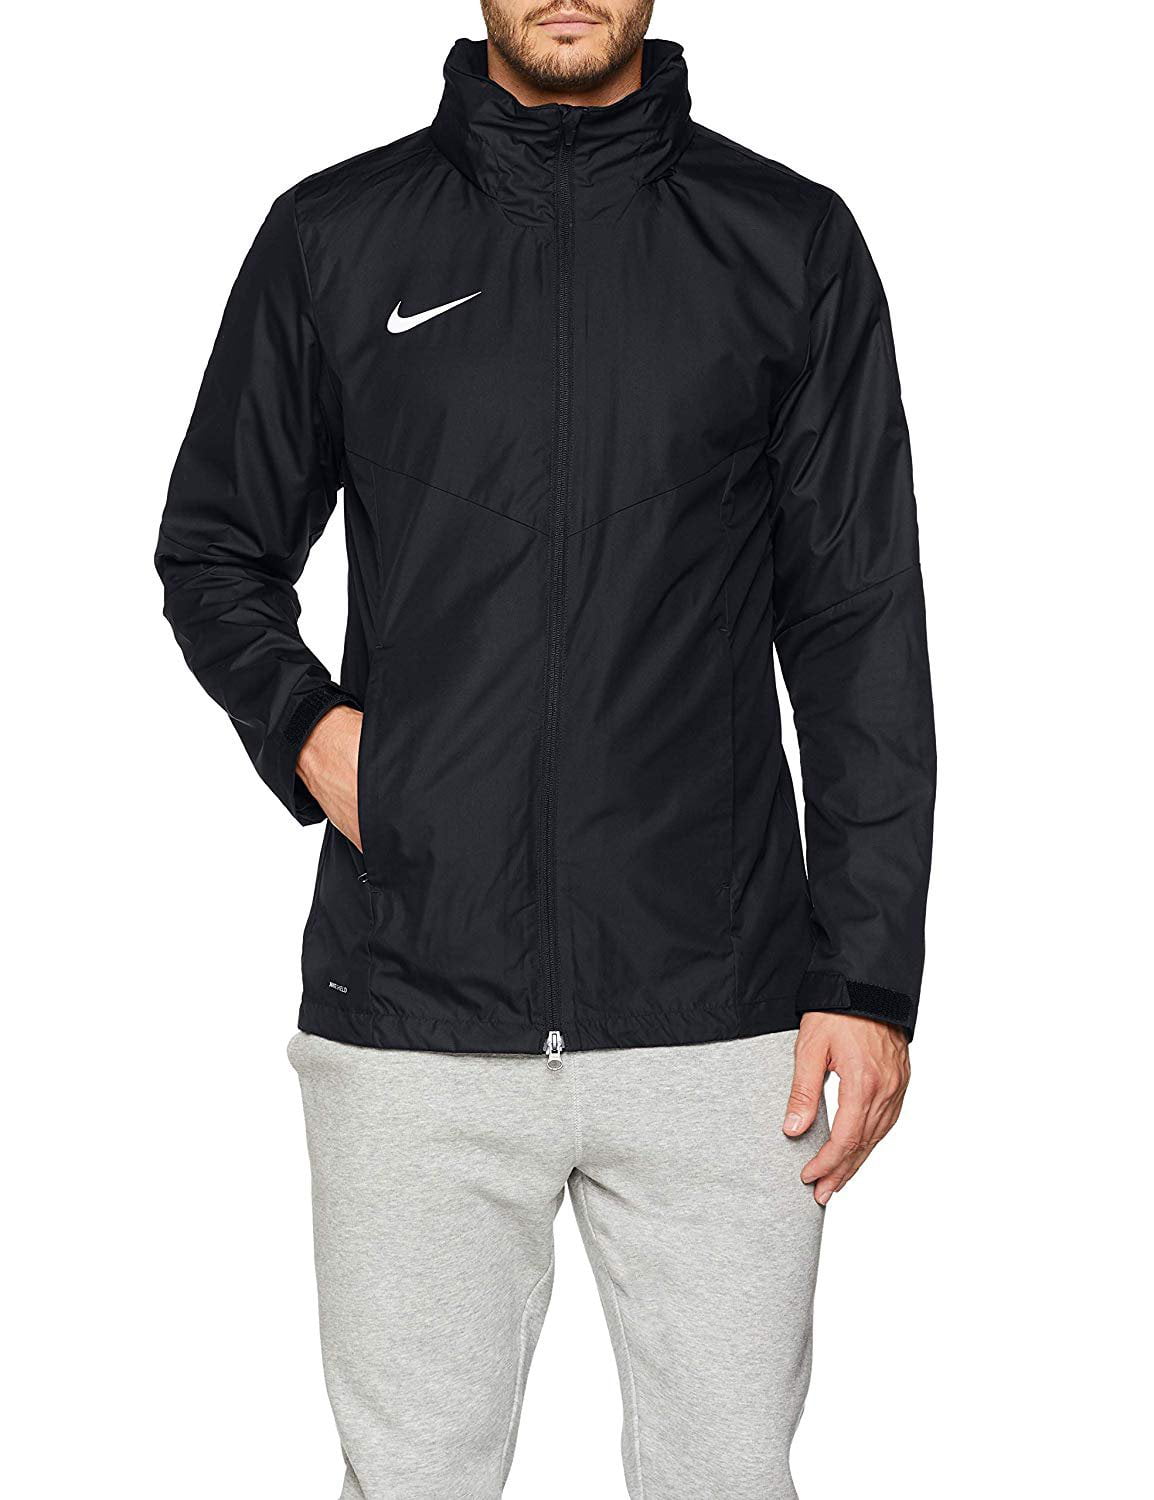 Nike Academy 18 Men's Rain Jacket 893796-010 (Black/White, Large ...